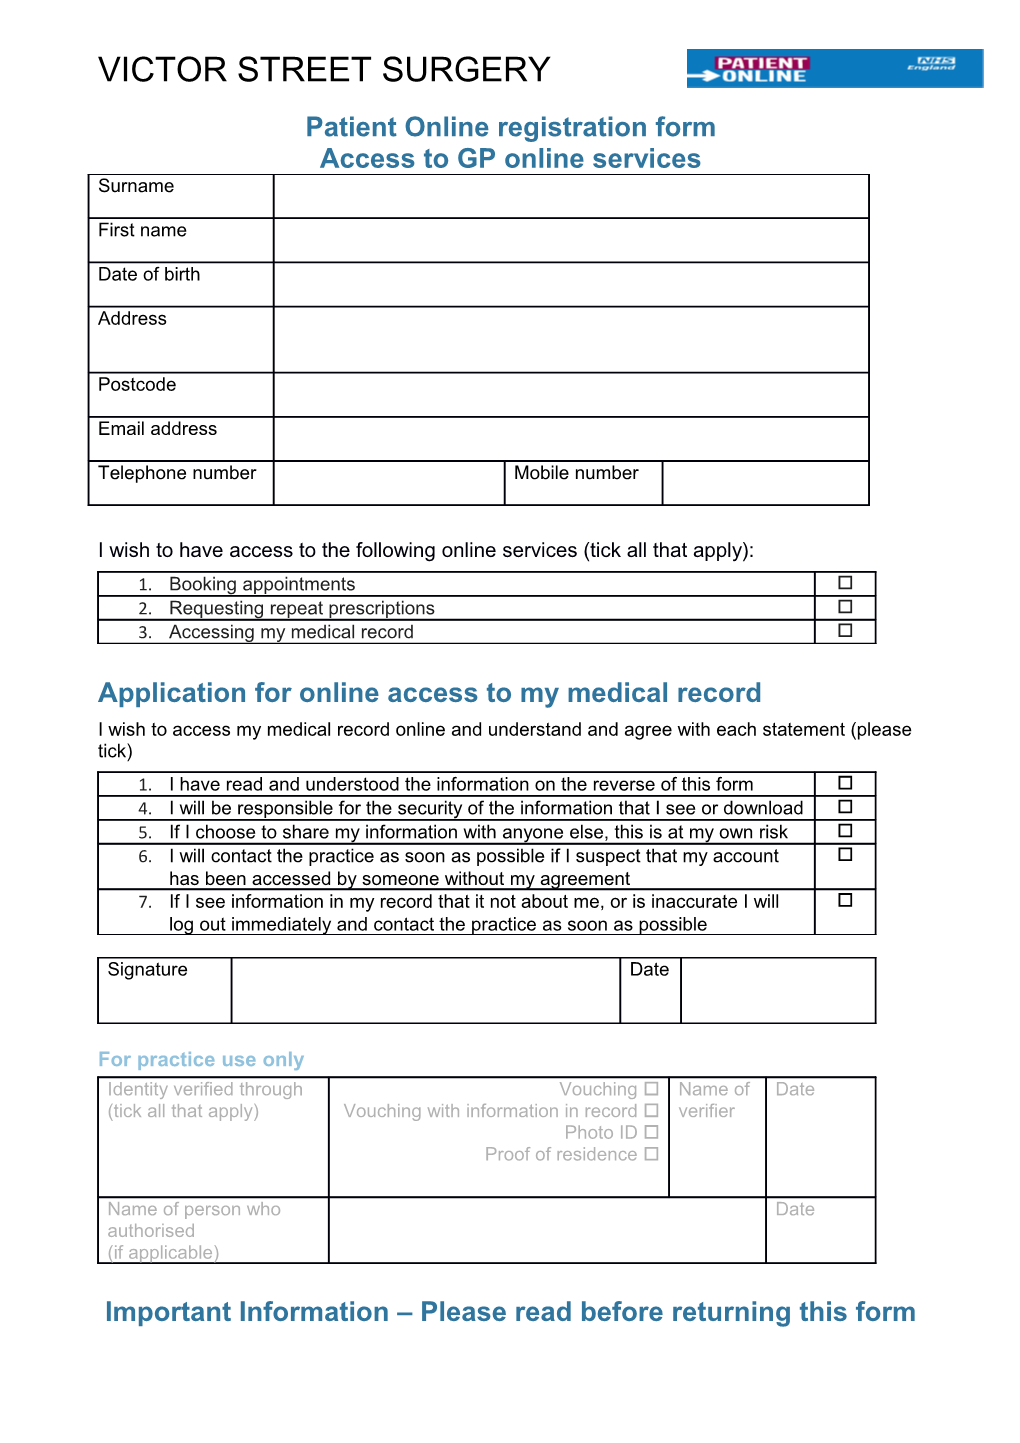 Patient Online Registration Form